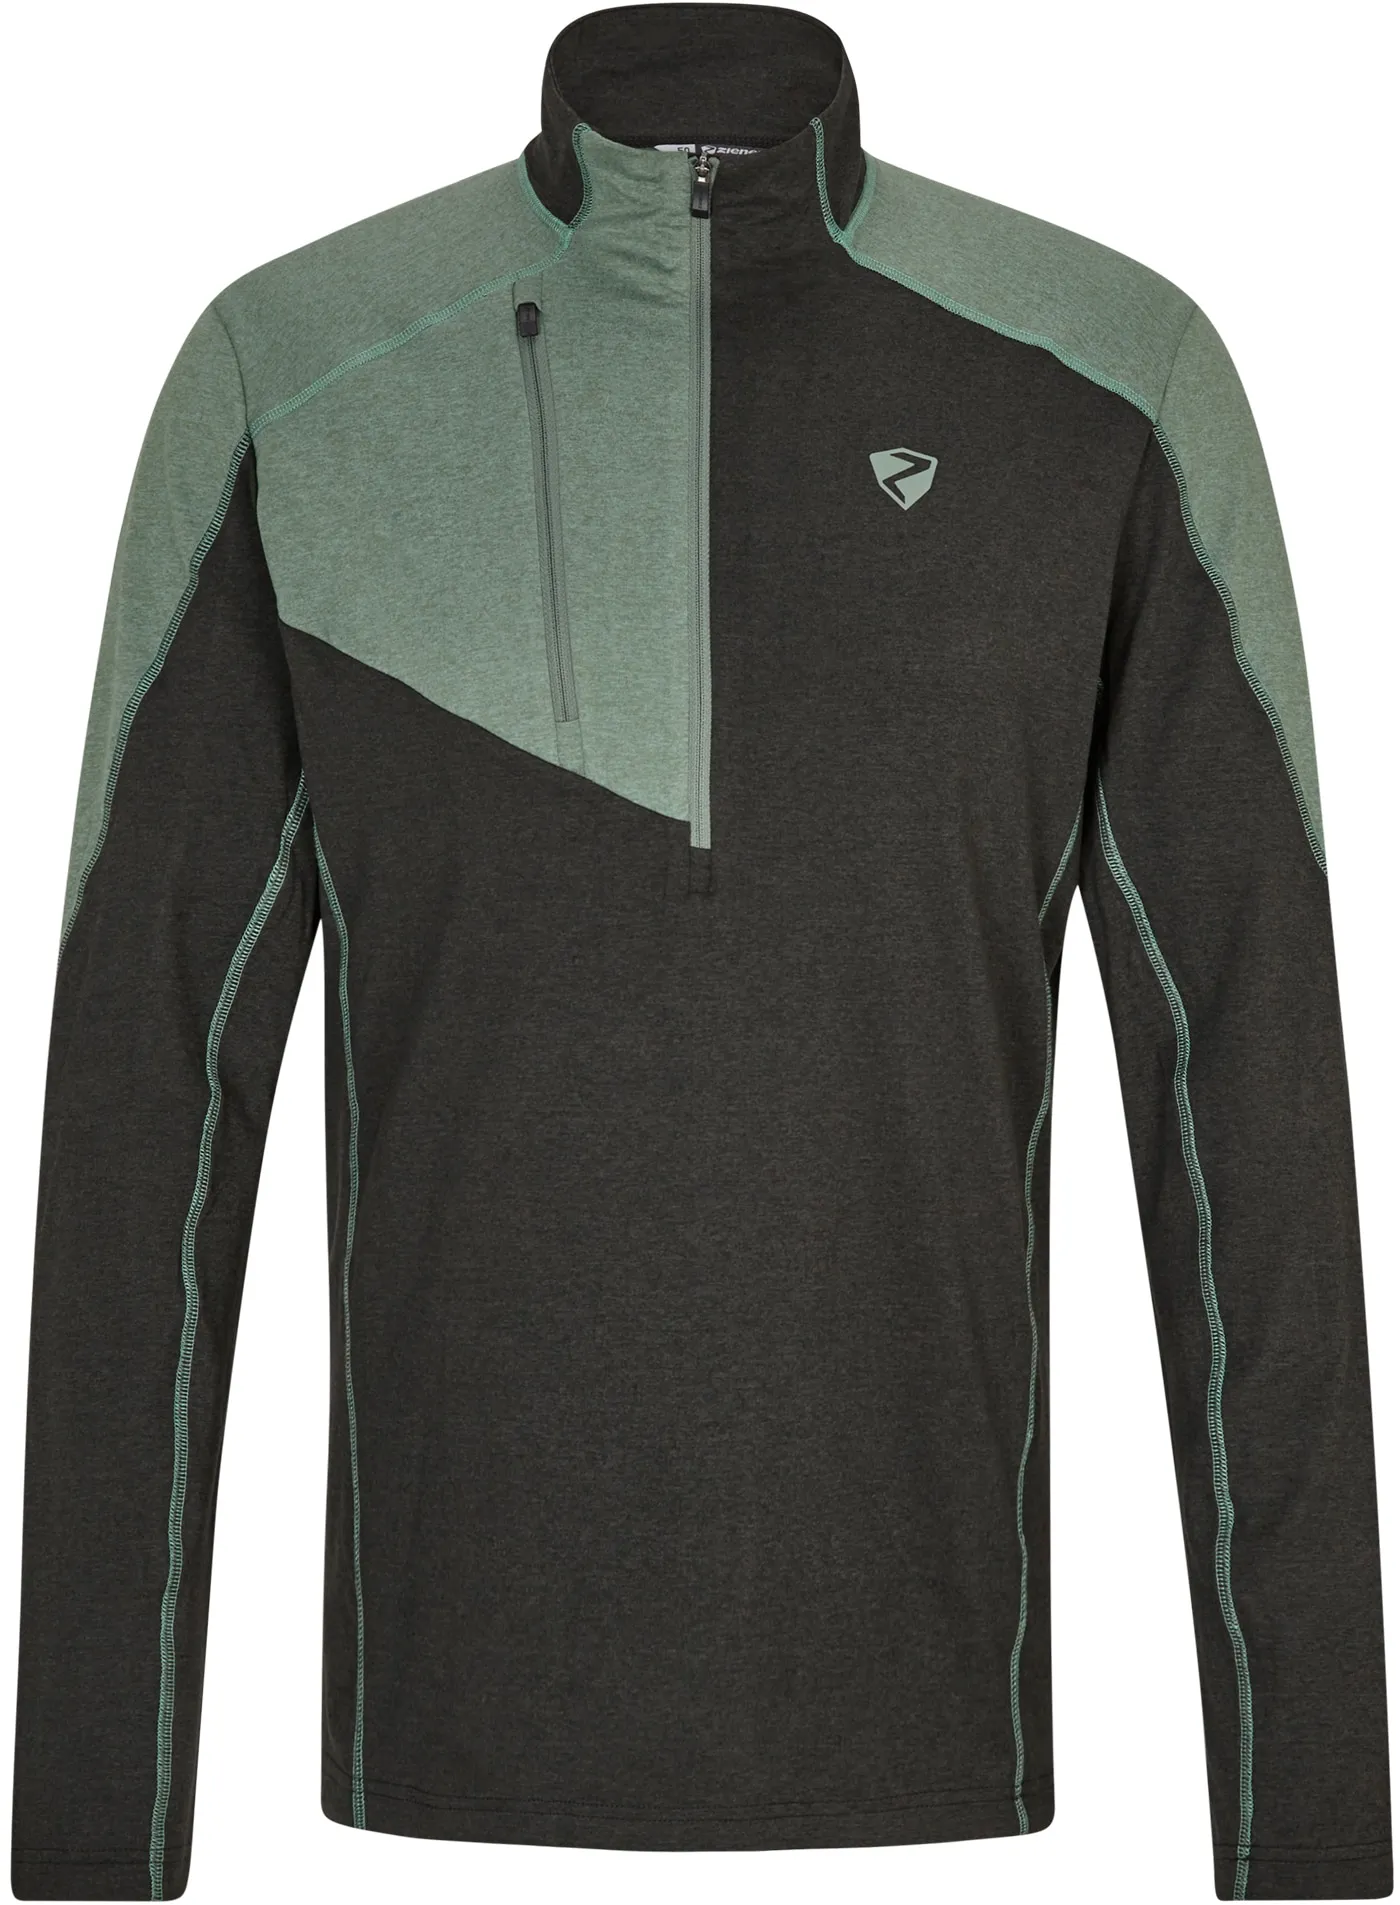 Sweater ZIENER "JAPVO" Gr. 52, schwarz (unifarben mit farbeinsatz) Herren Sweatshirts